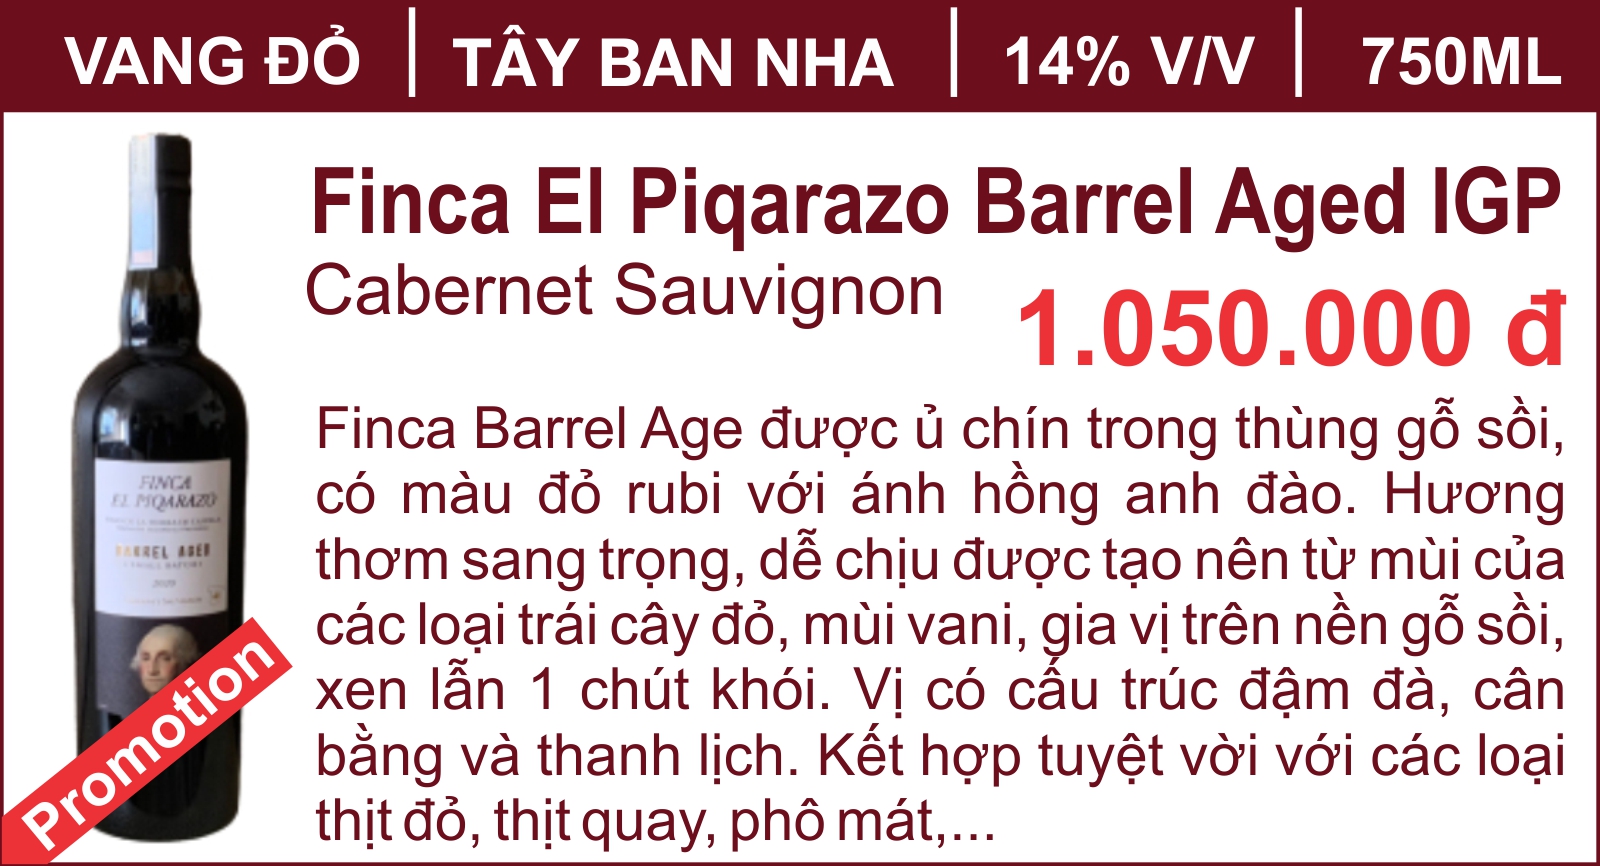 Finca El Piqarazo Barrel Aged IGP